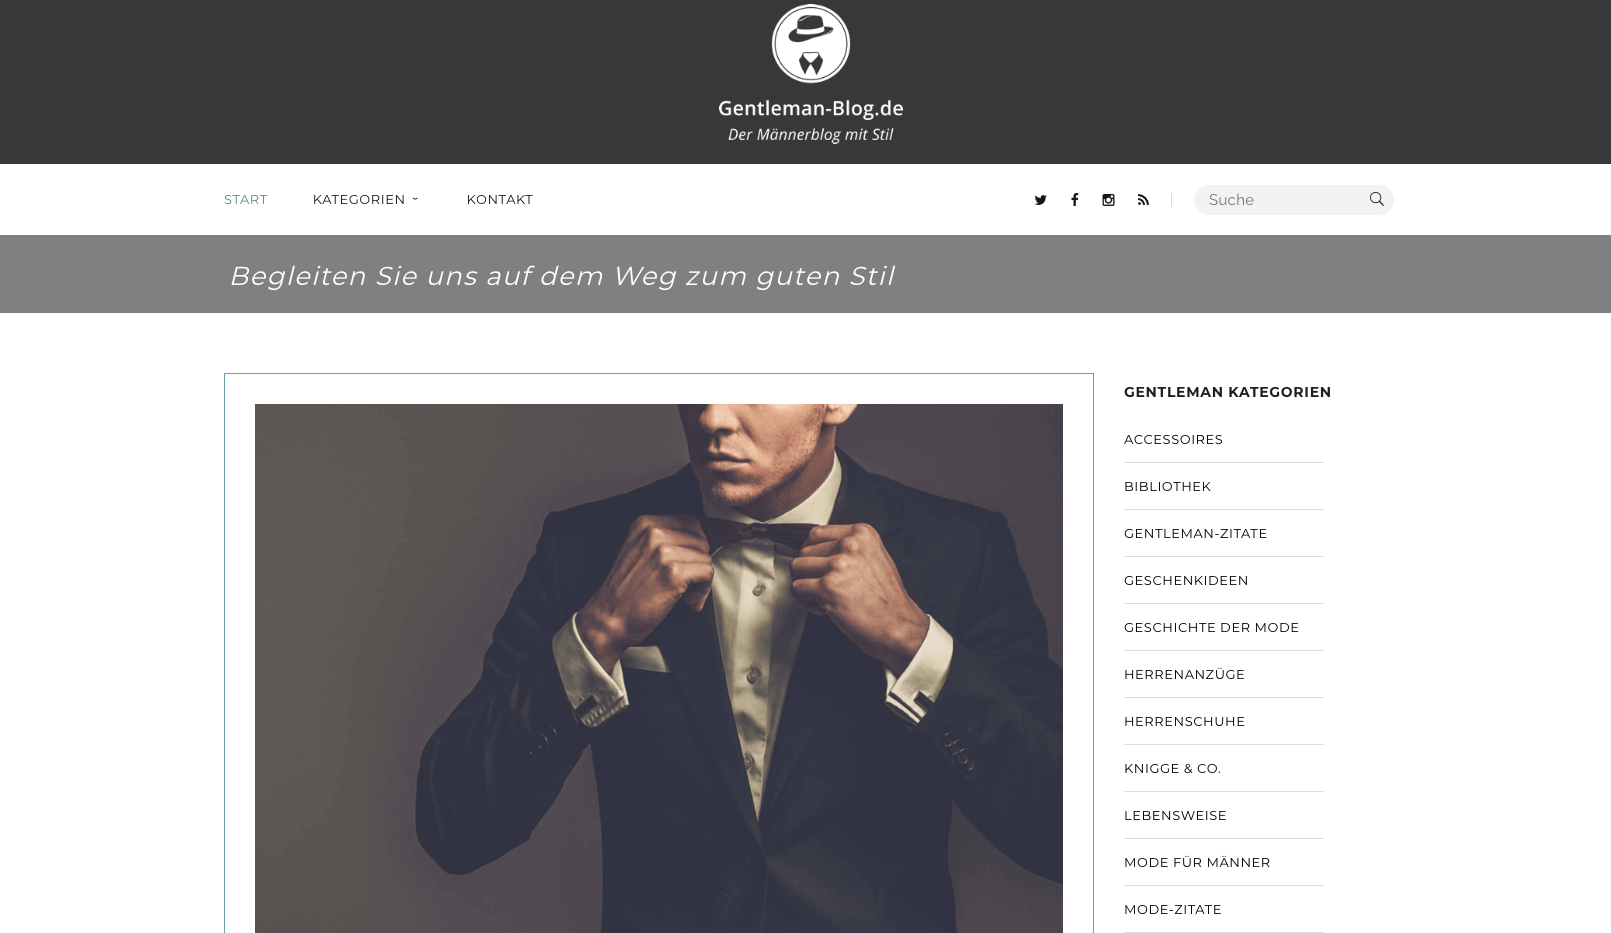 Gentleman-Blog.de